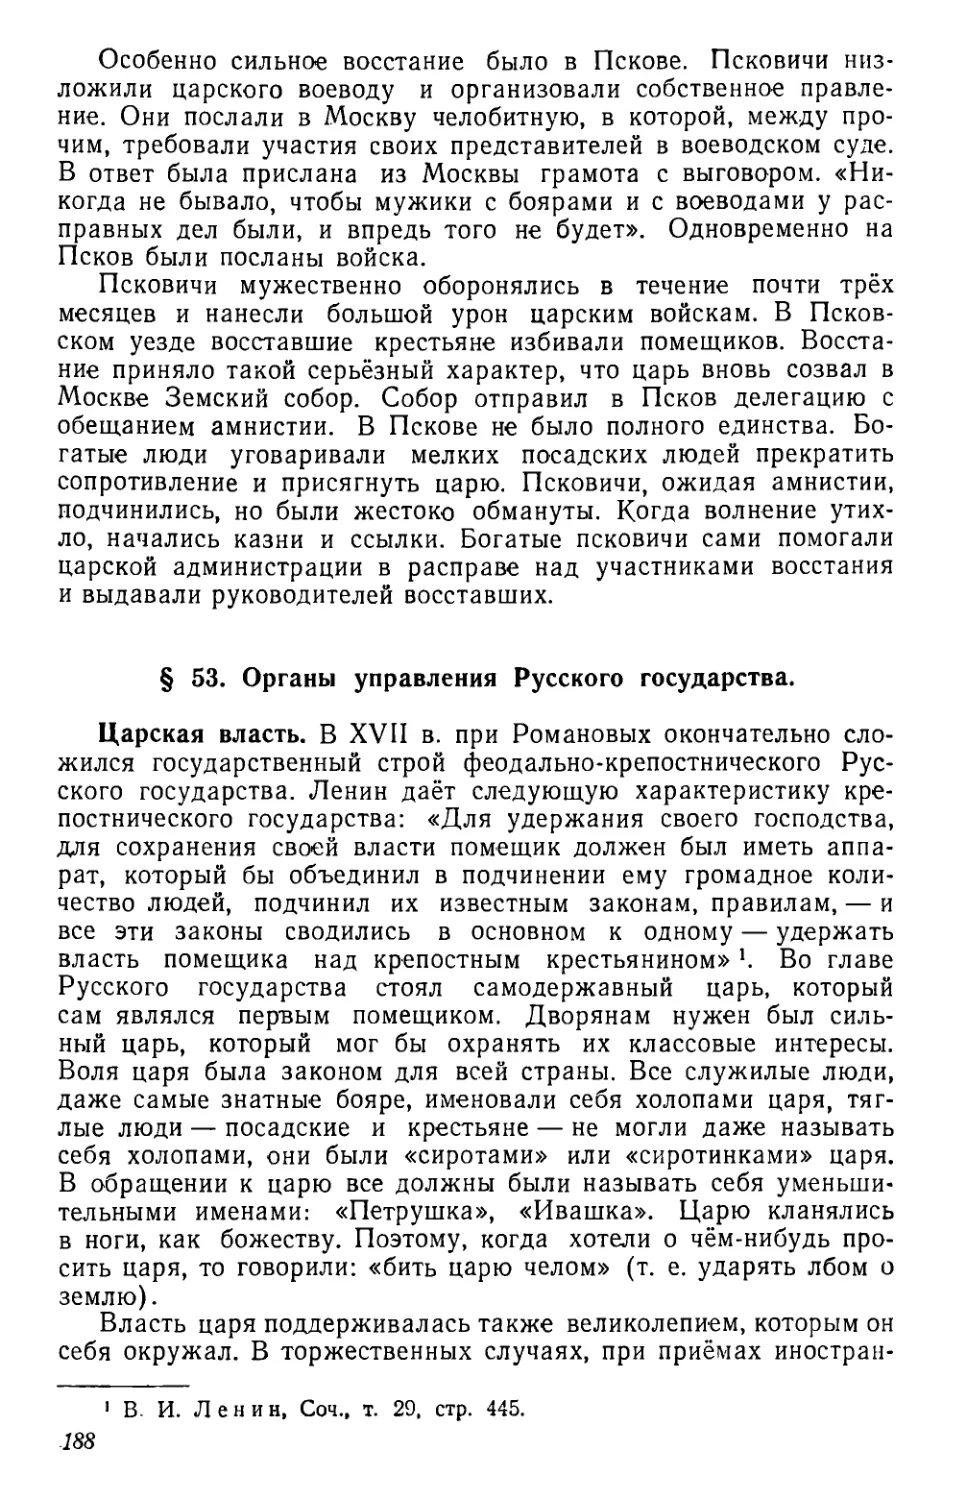 § 53. Органы управления Русского государства